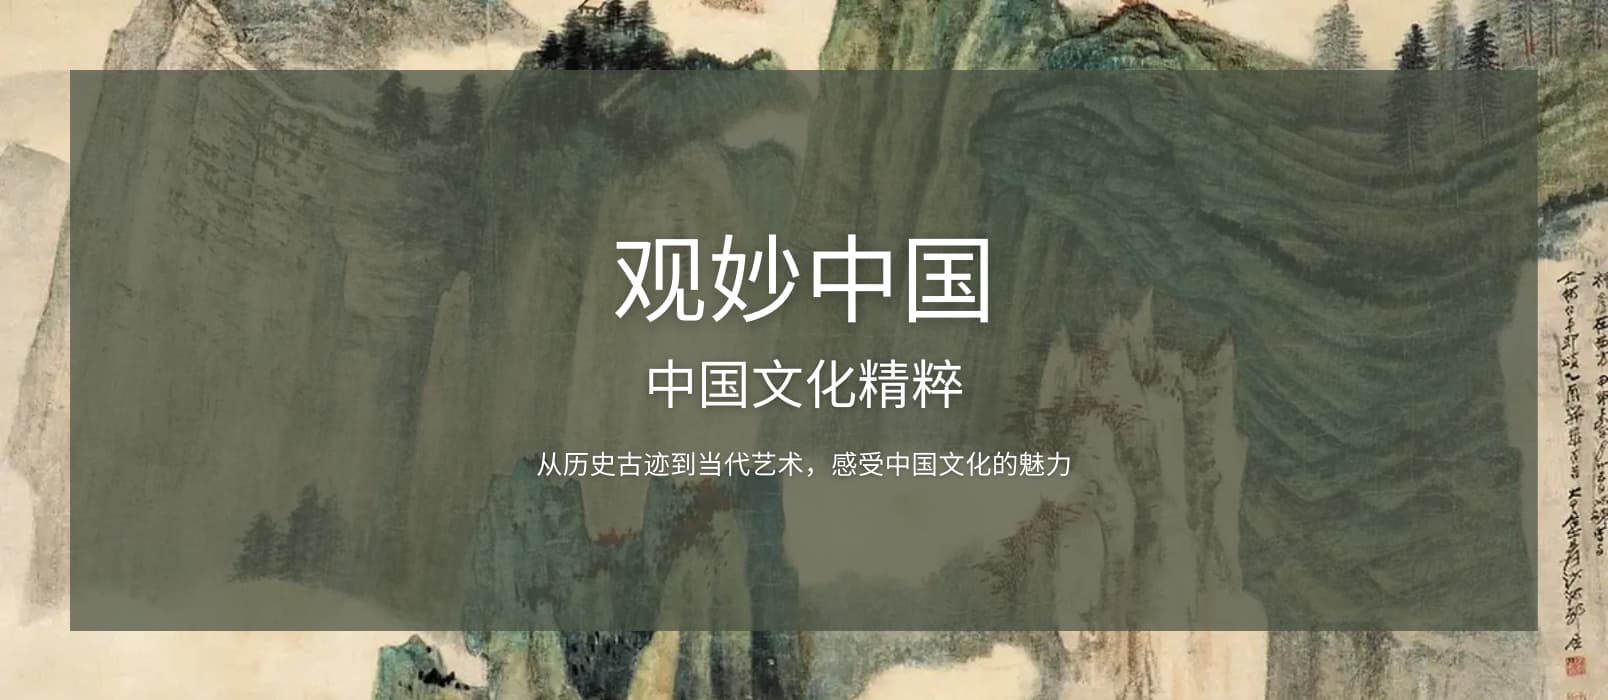 观妙中国 - 在线观看中国 30 家博物馆及艺术文化机构，超过 8000 件藏品和街景[iPhone/Android]